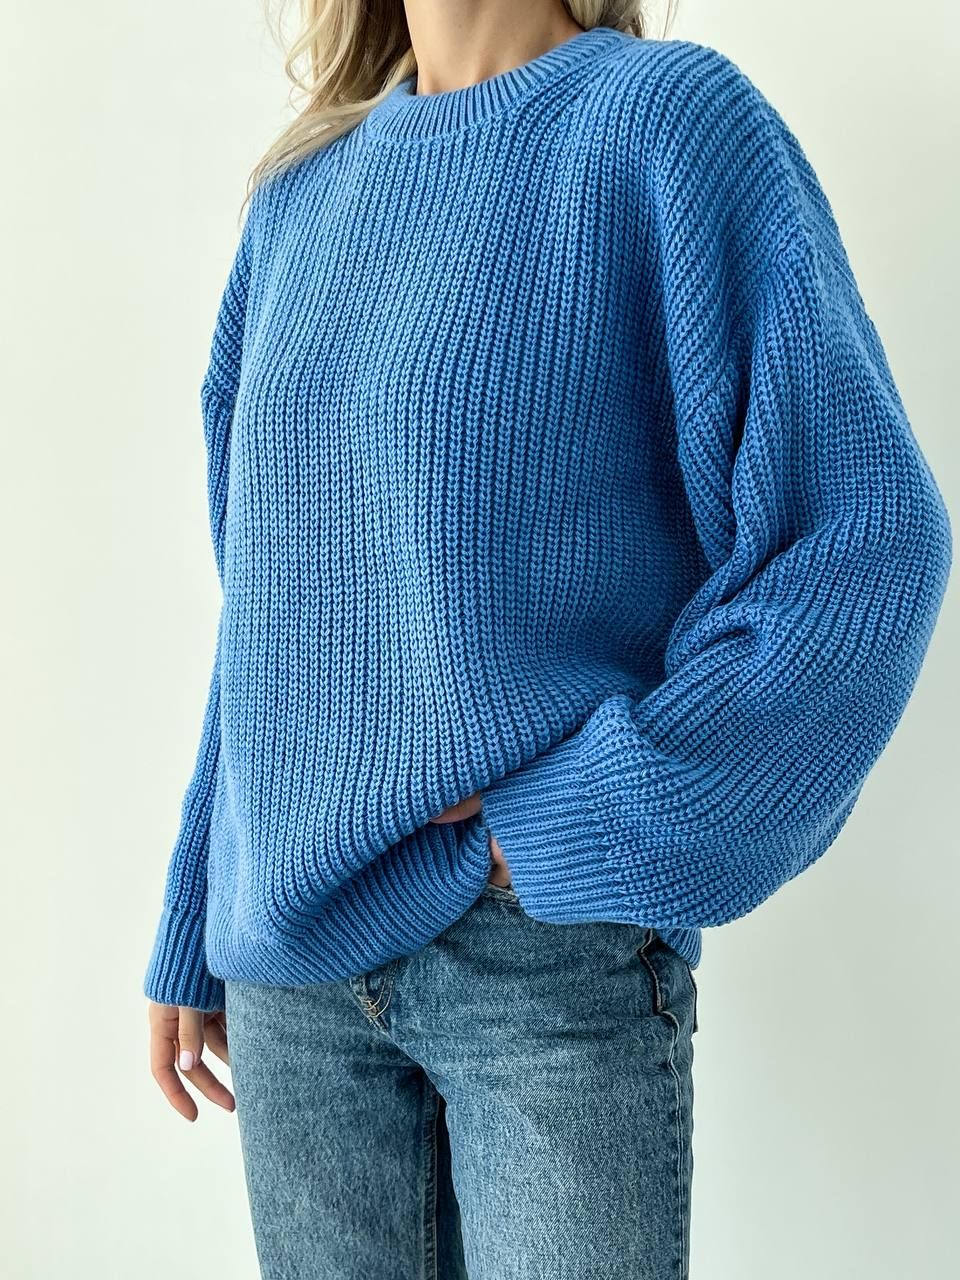 Базовый шерстяной свитер оверсайз синий, Синий, универсальный (S-L)